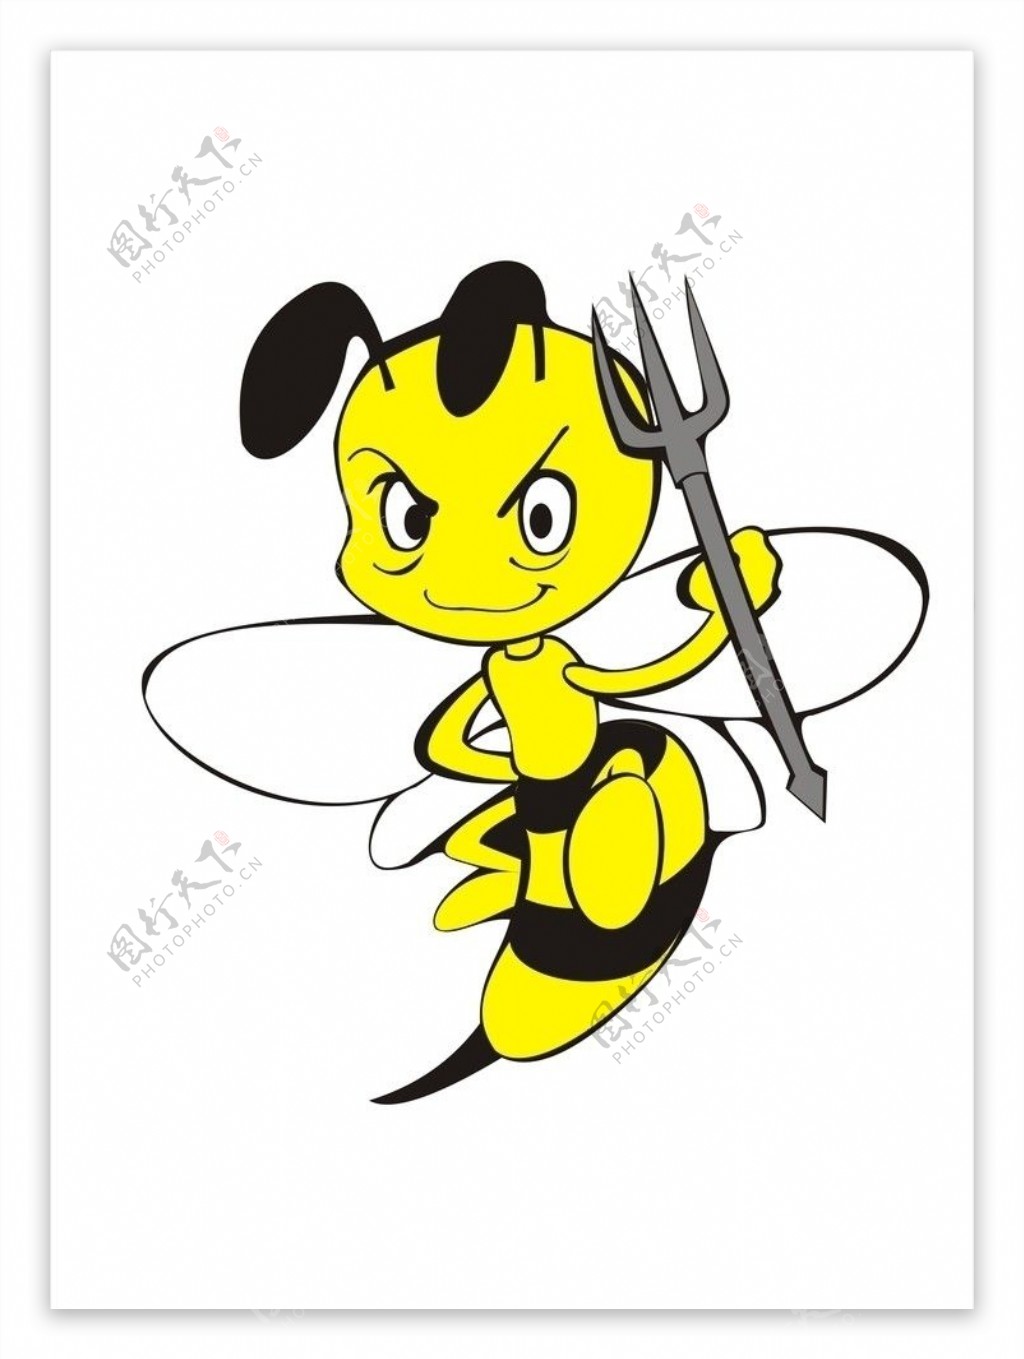 蜂黄蜂大黄蜂图片